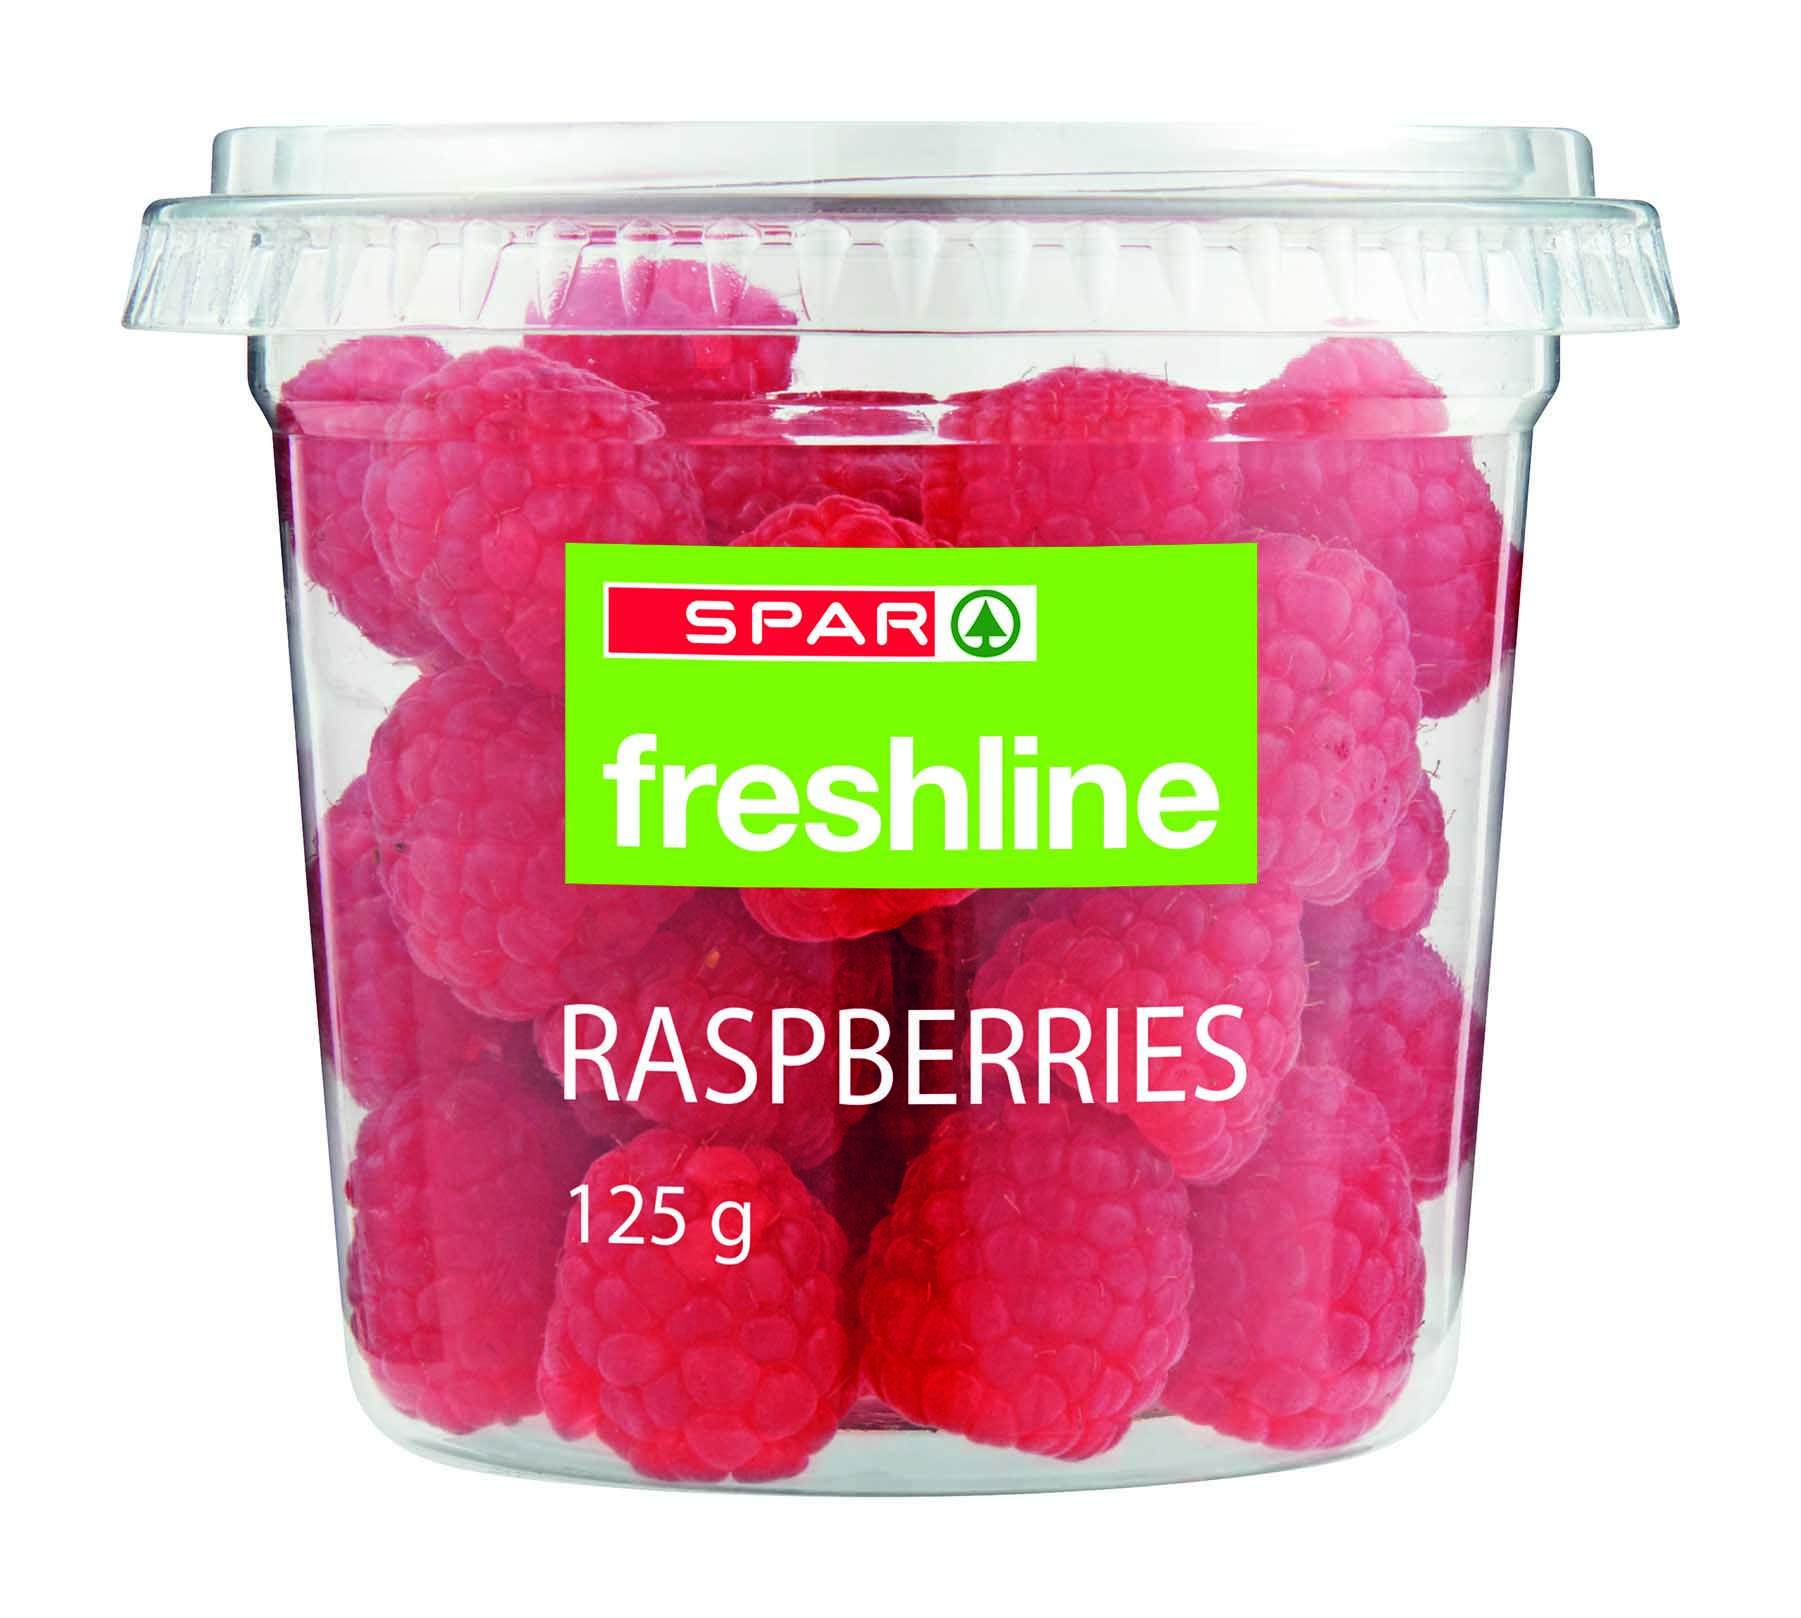 freshline raspberries